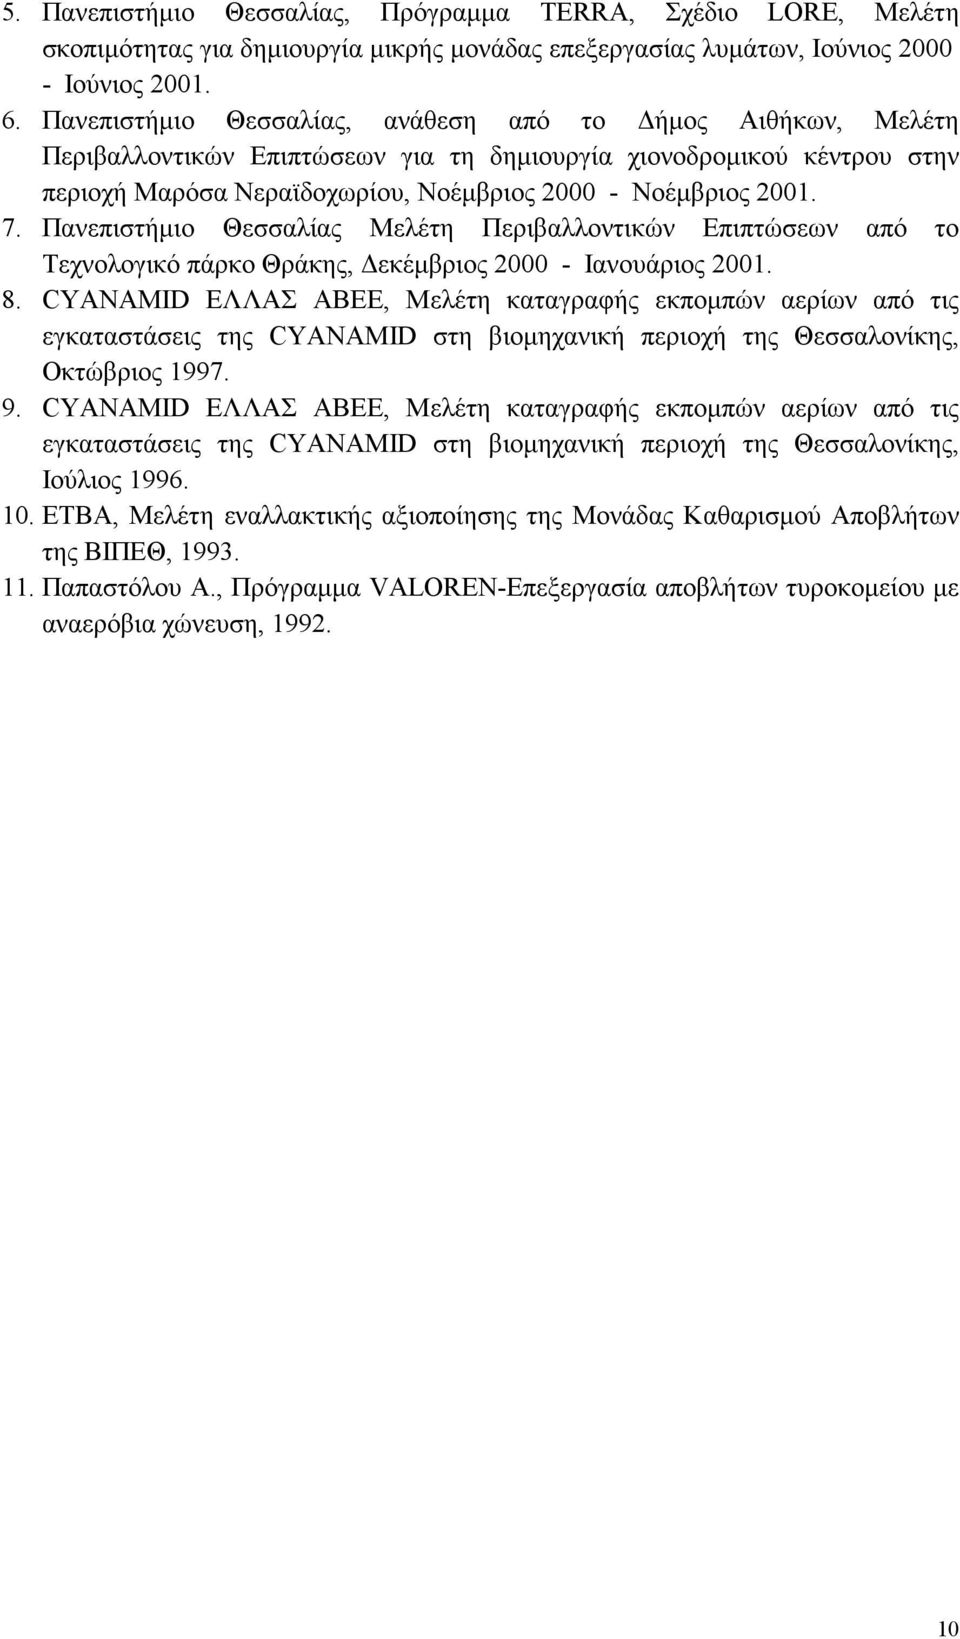 Πανεπιστήµιο Θεσσαλίας Μελέτη Περιβαλλοντικών Επιπτώσεων από το Τεχνολογικό πάρκο Θράκης, εκέµβριος 2000 - Ιανουάριος 2001. 8.